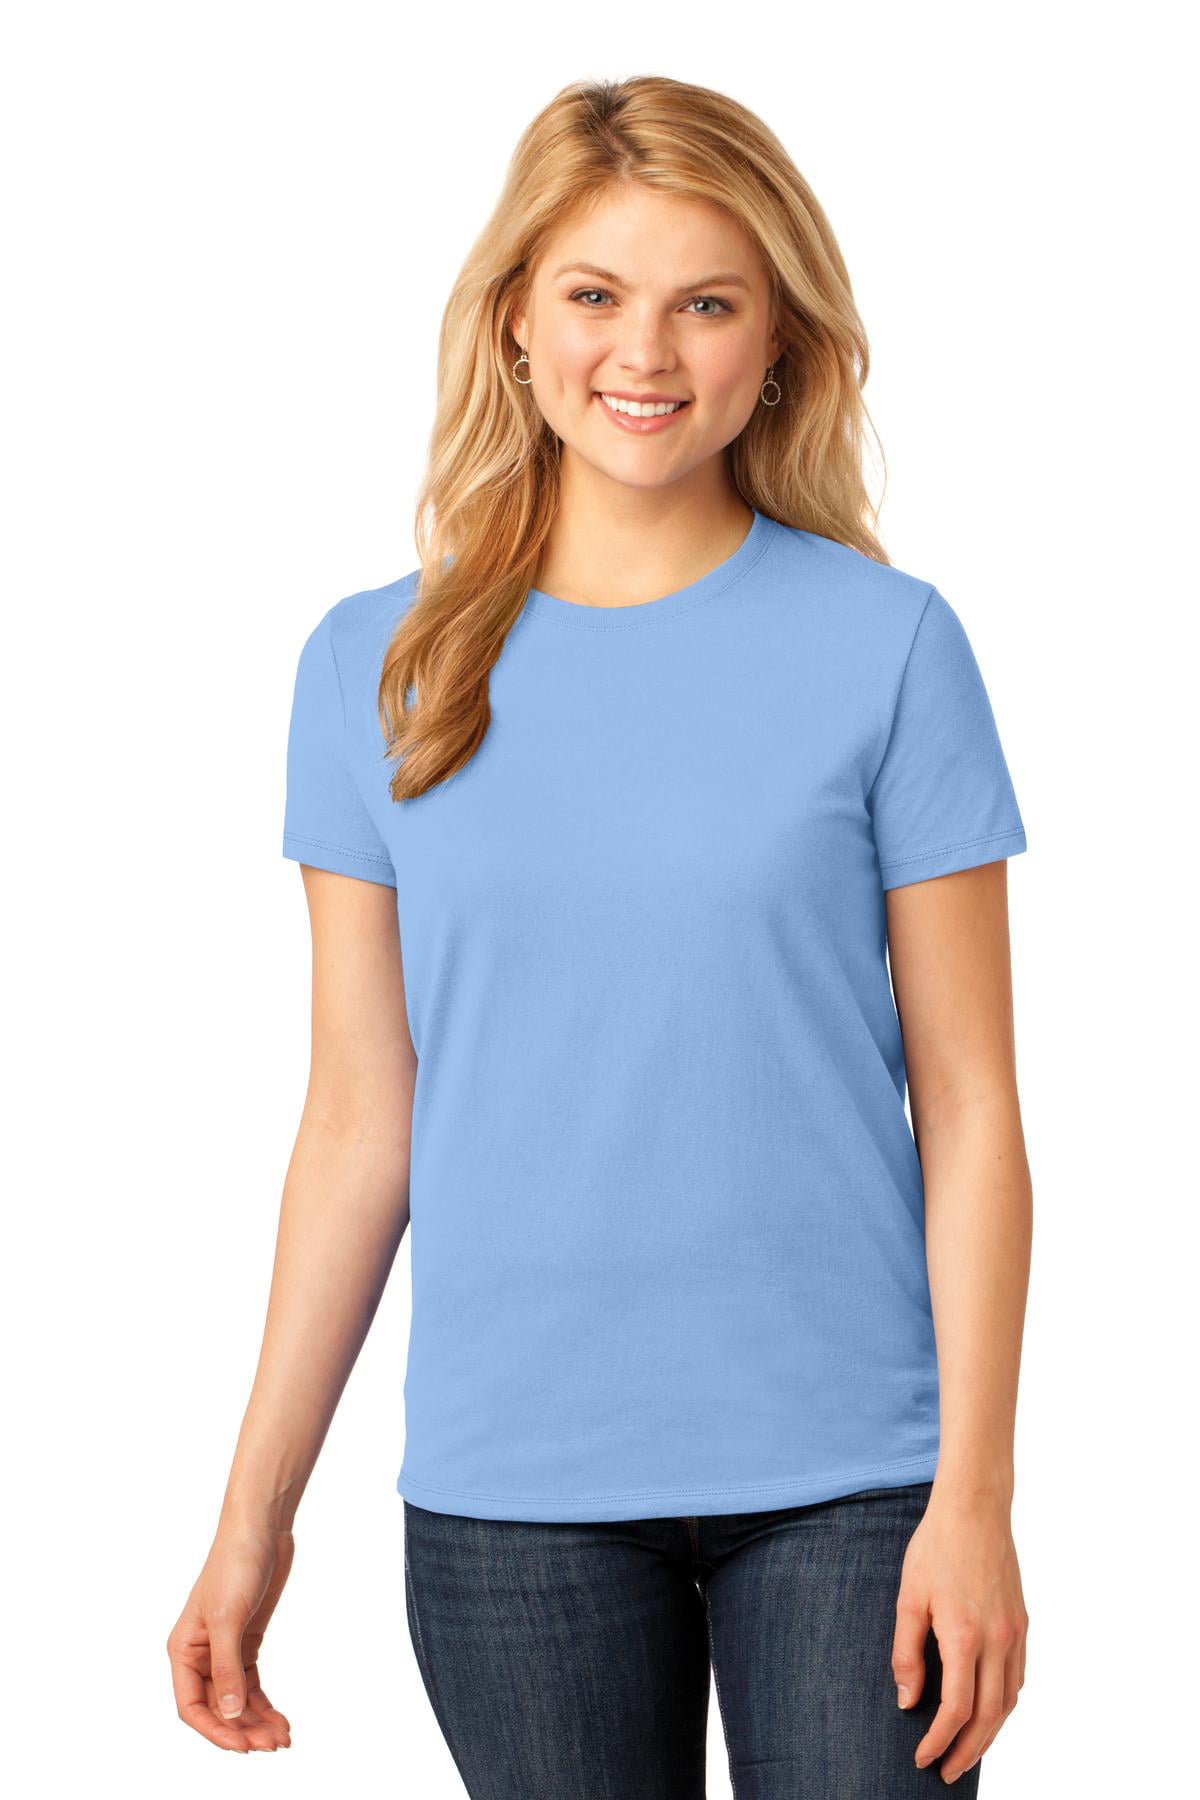 Port & 54oz 100% Cotton TShirt Blue, - Walmart.com